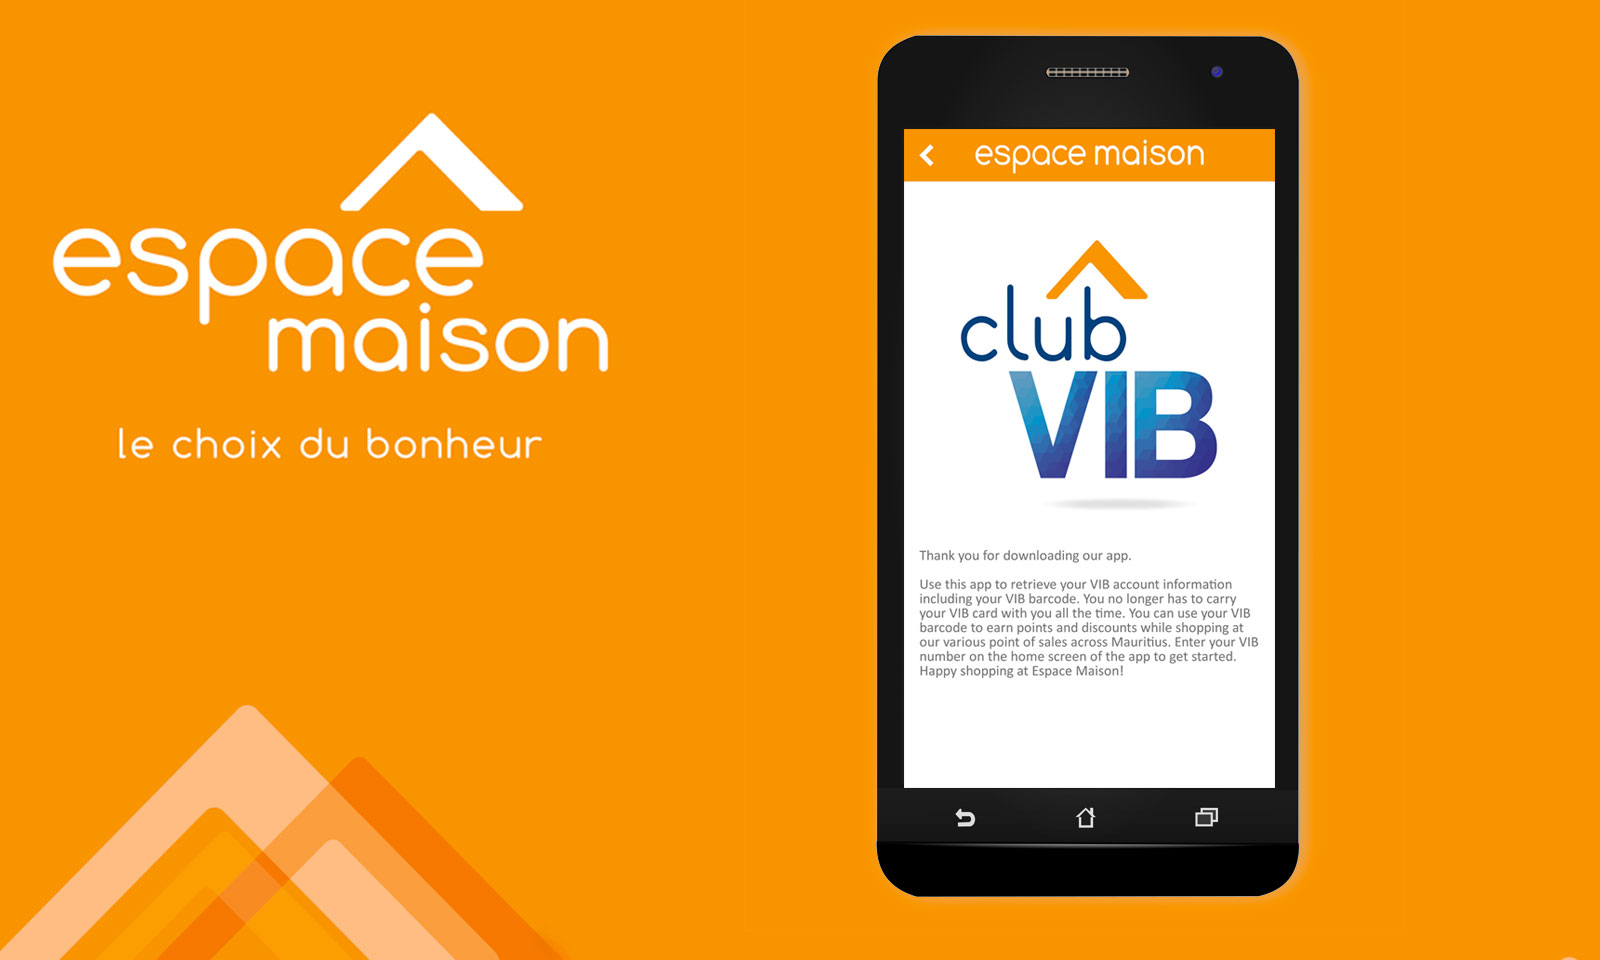 Club VIB app